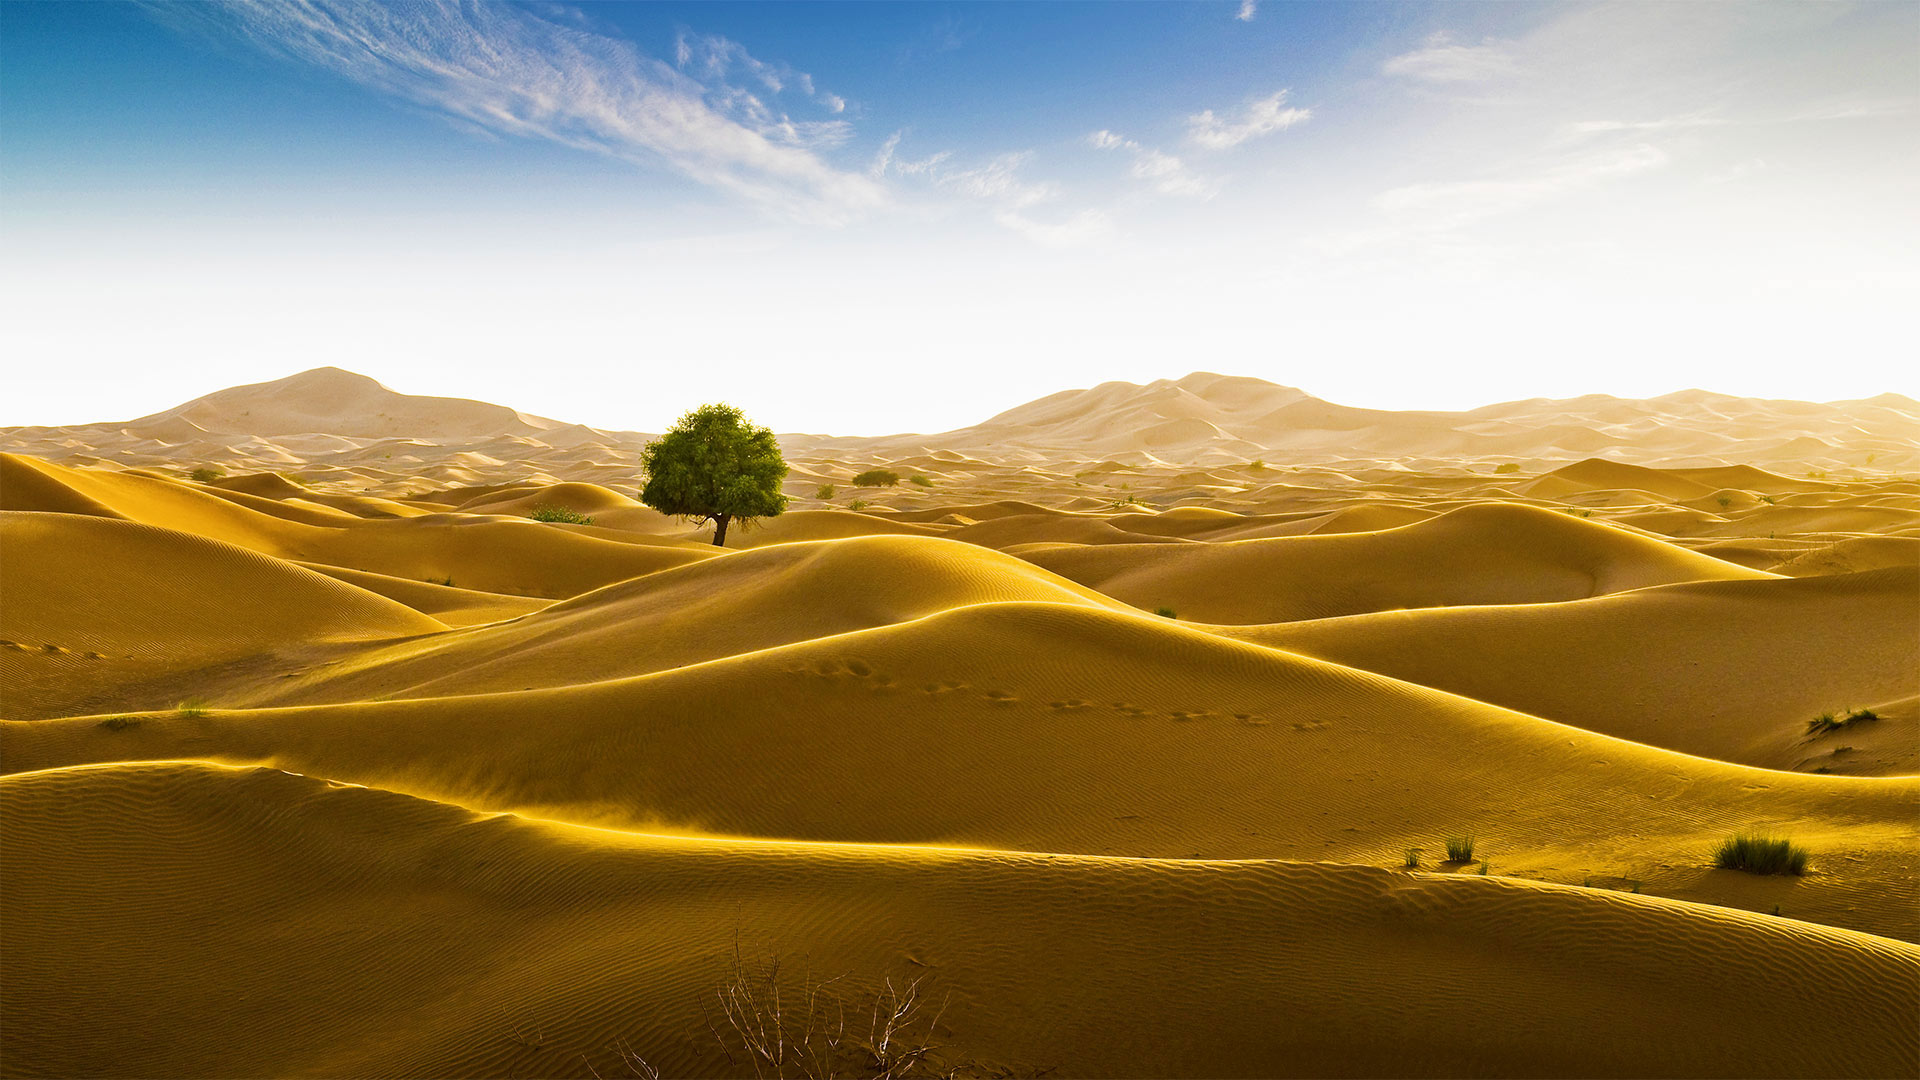 位于阿曼和迪拜酋长国边界的鲁卜哈利沙漠 